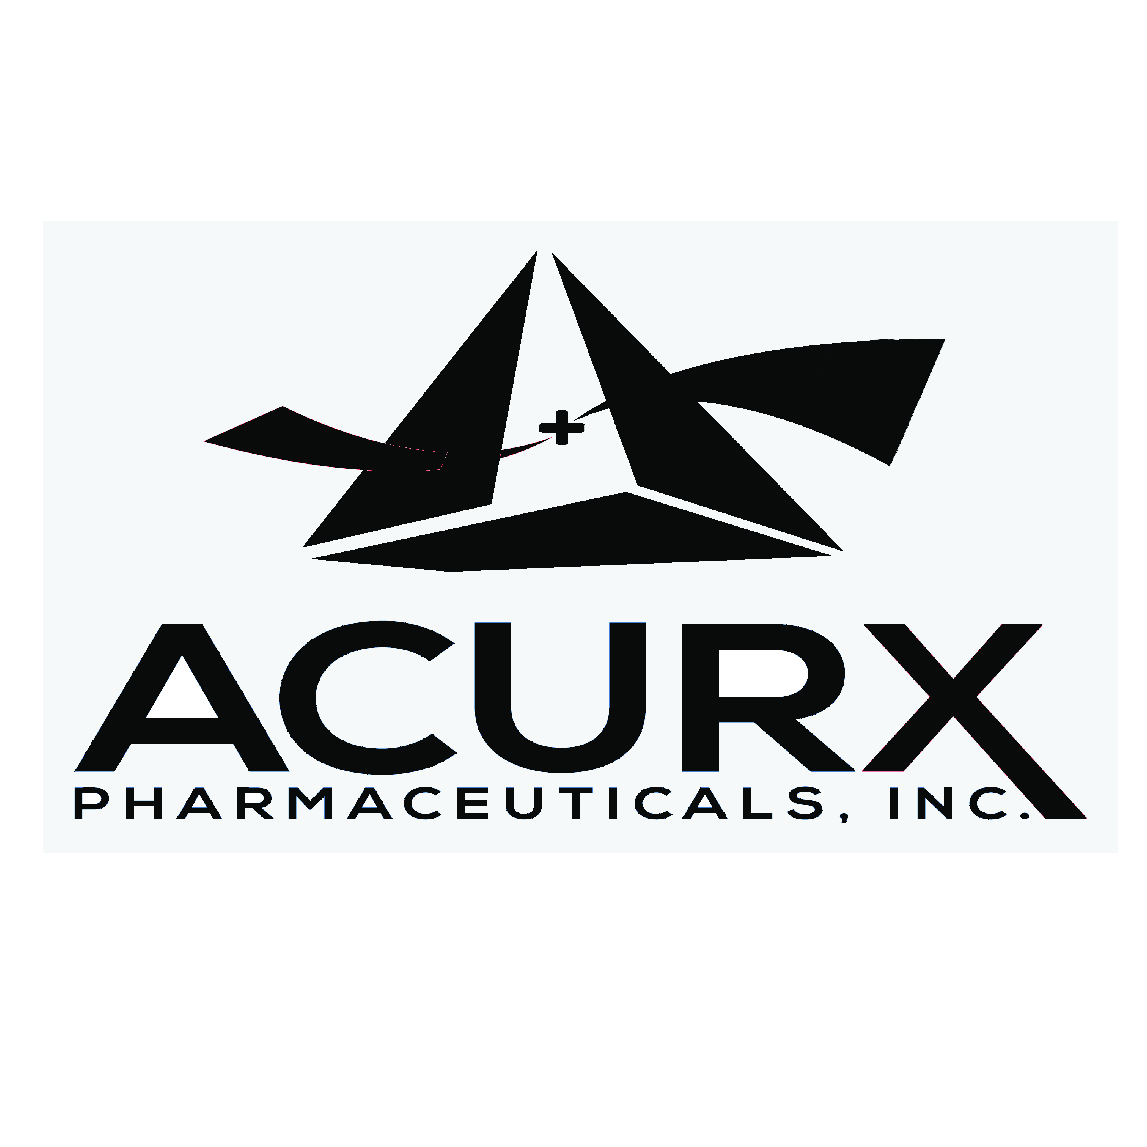 Acurx Pharmaceuticals